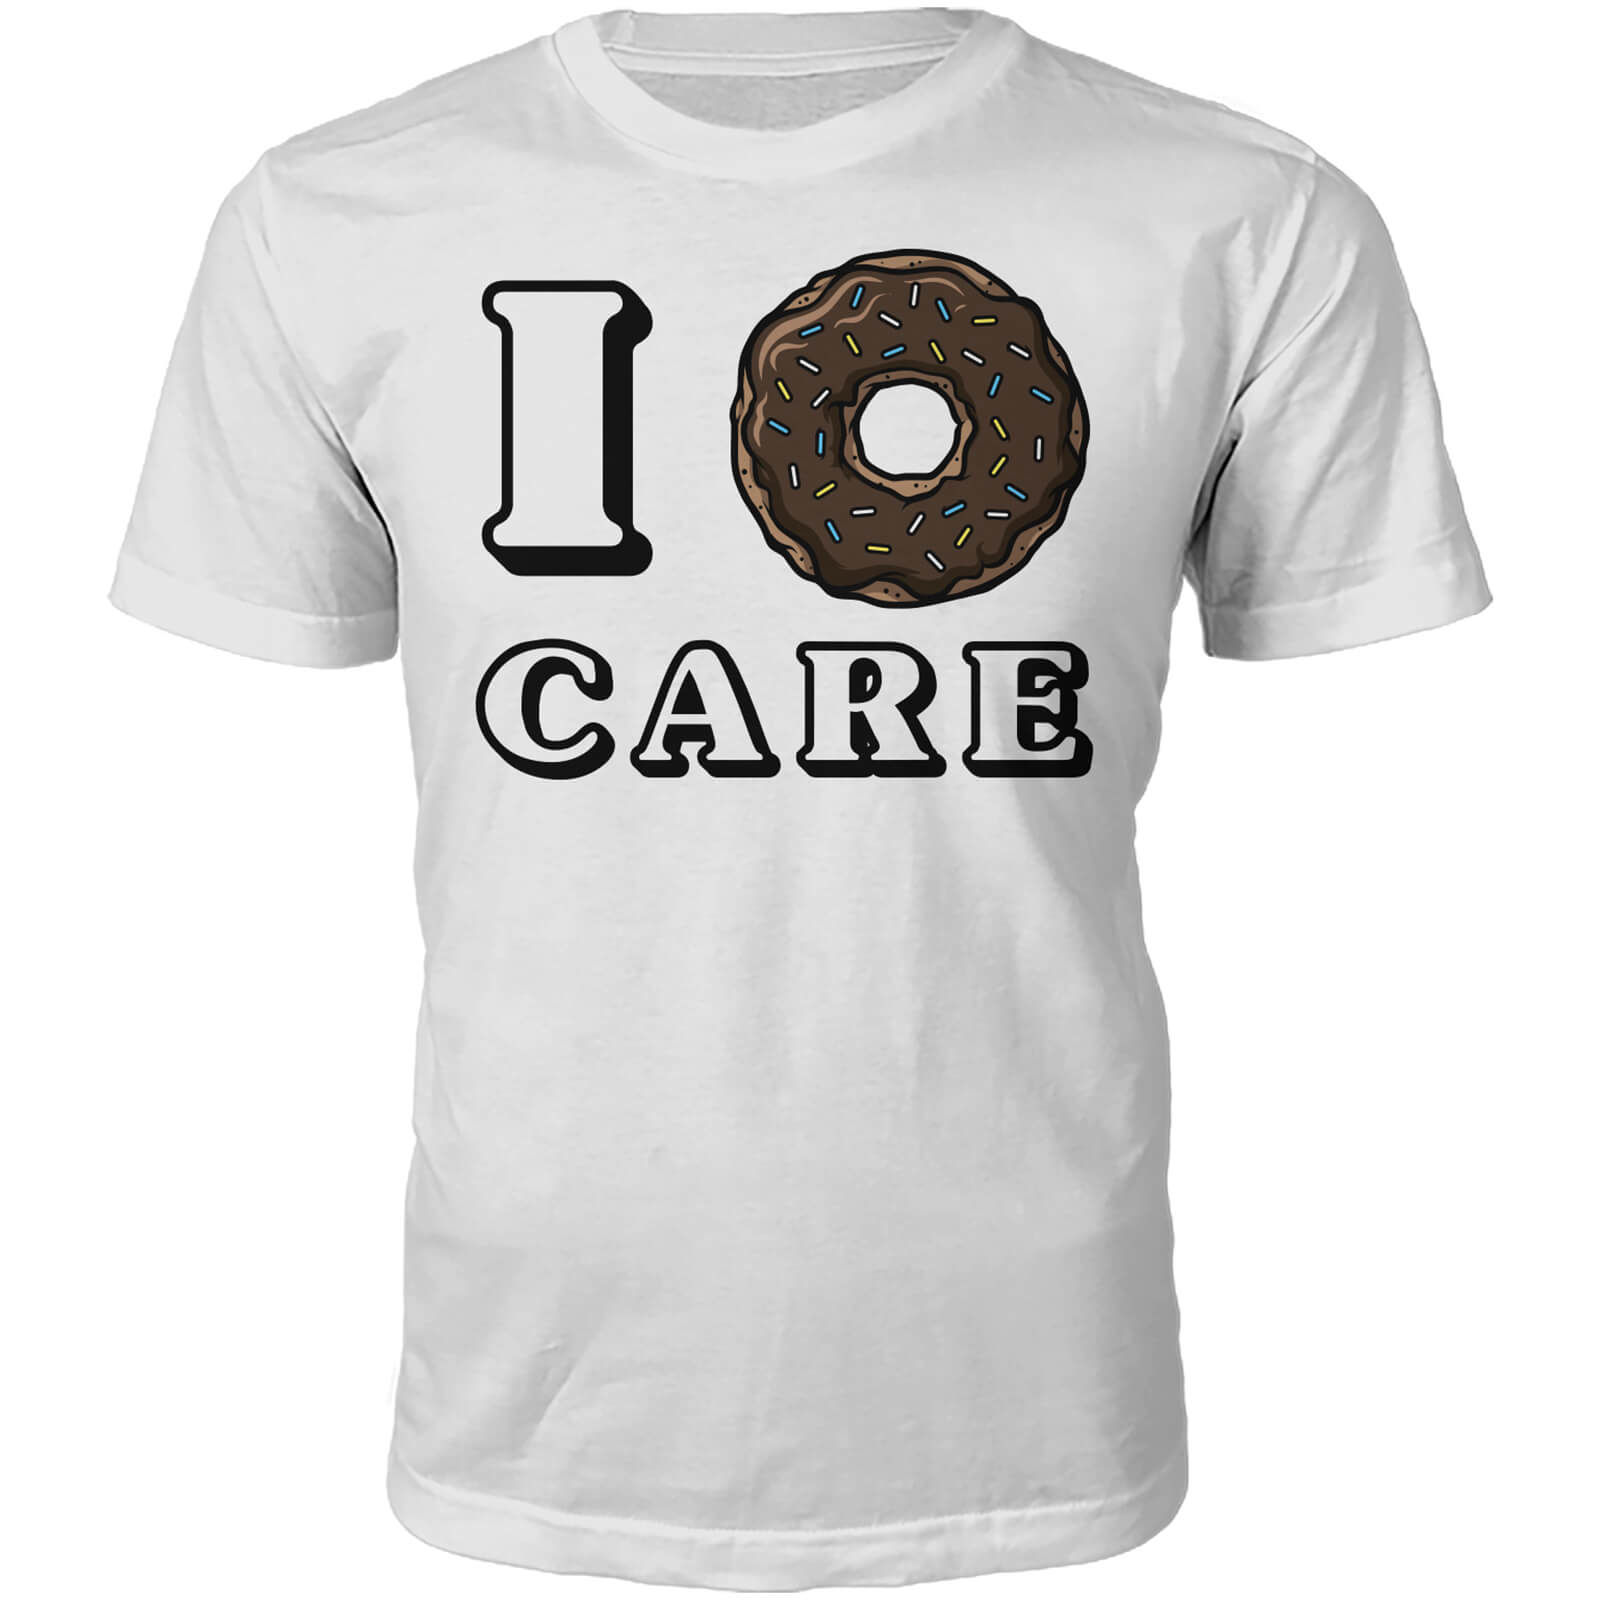 I Donut Care Slogan T-Shirt - White - S - White